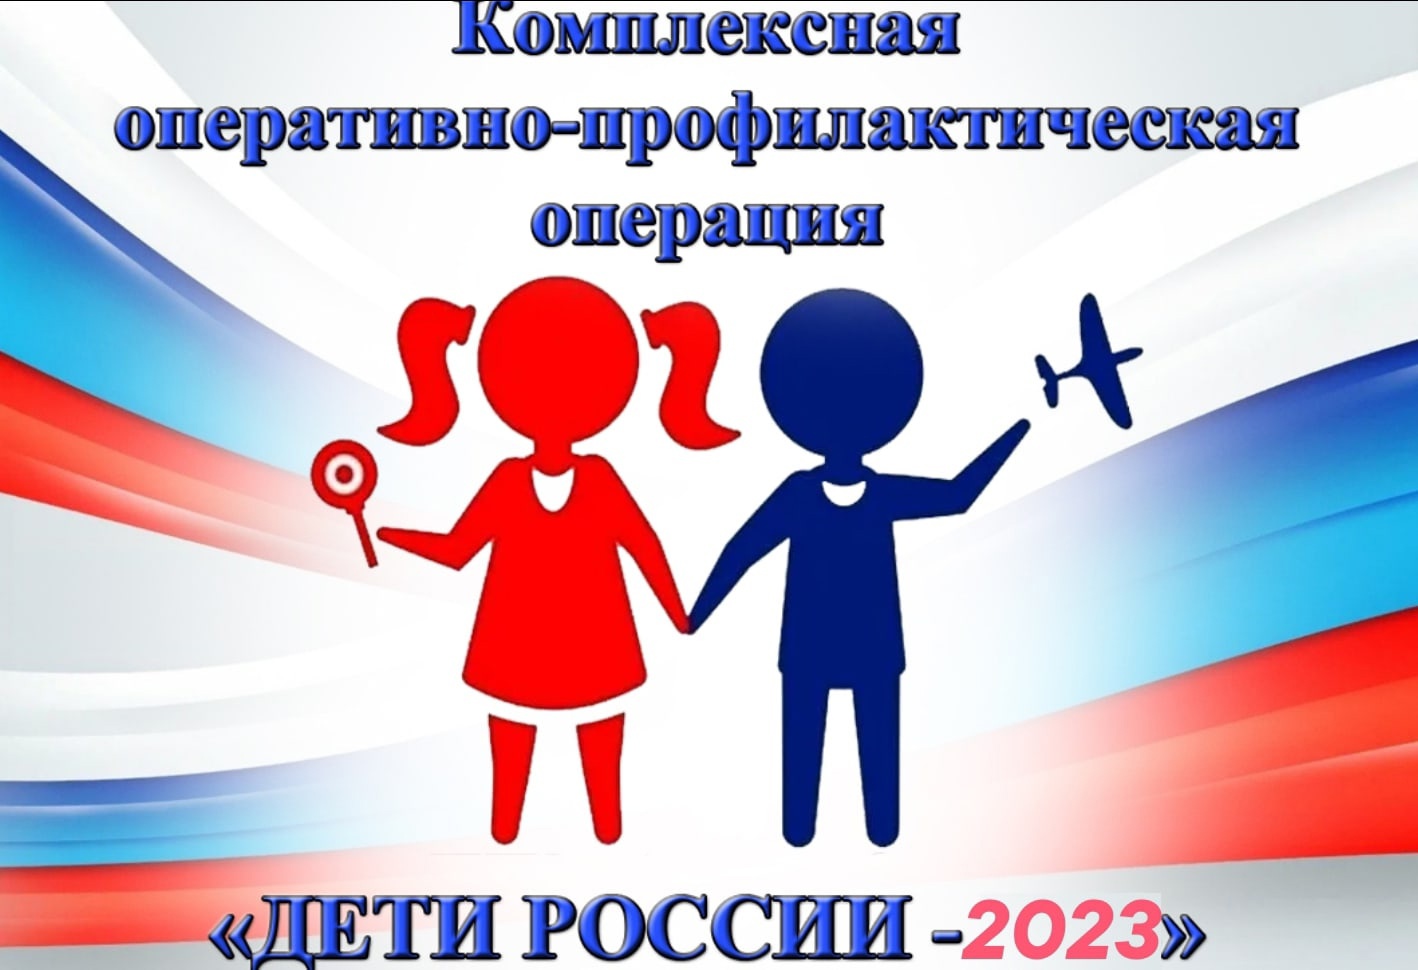 Дети России 2023.